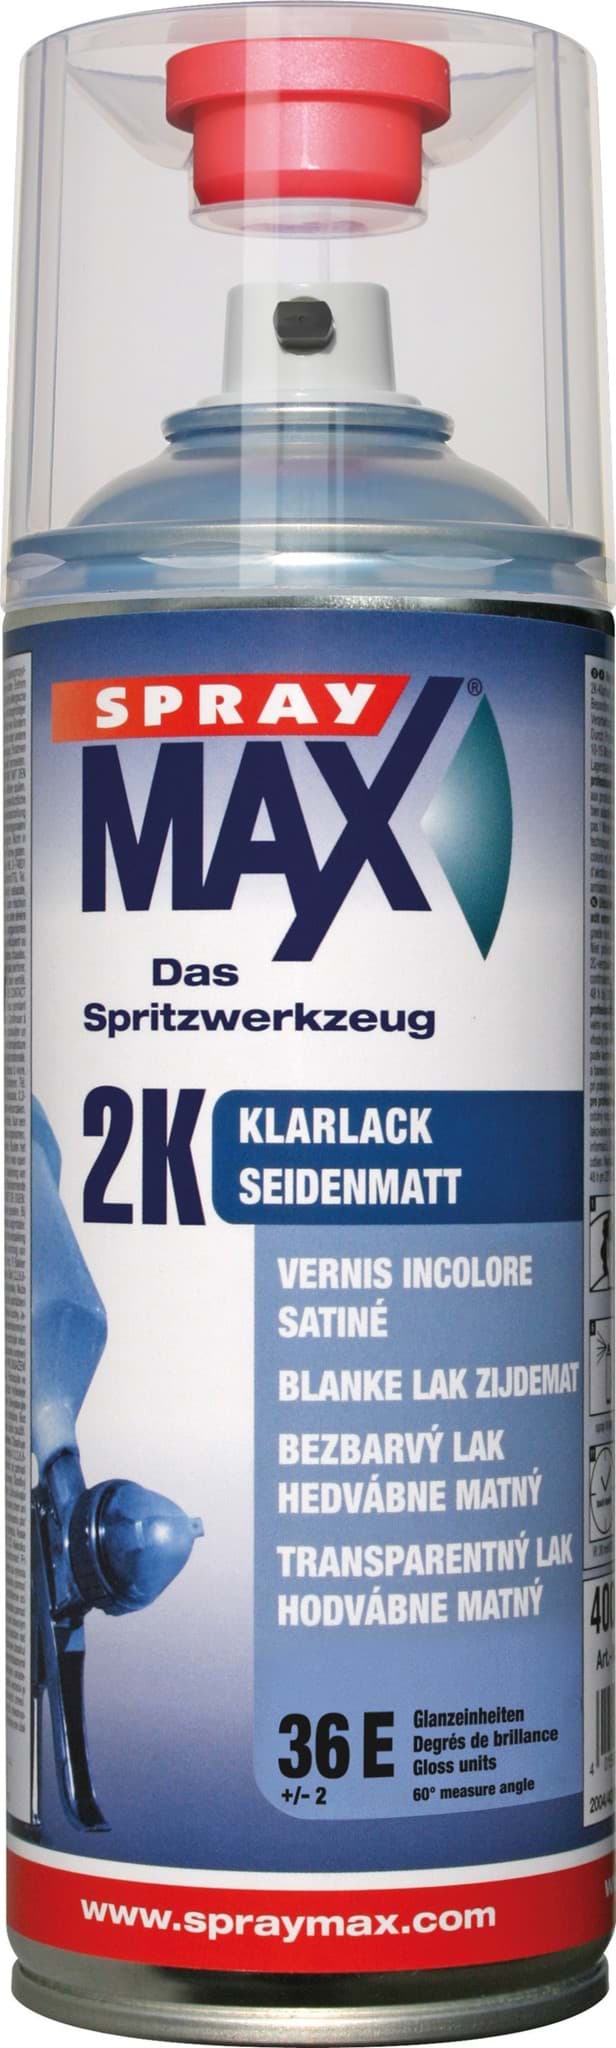 Изображение SprayMax 2K Klarlack seidenmatt 680067